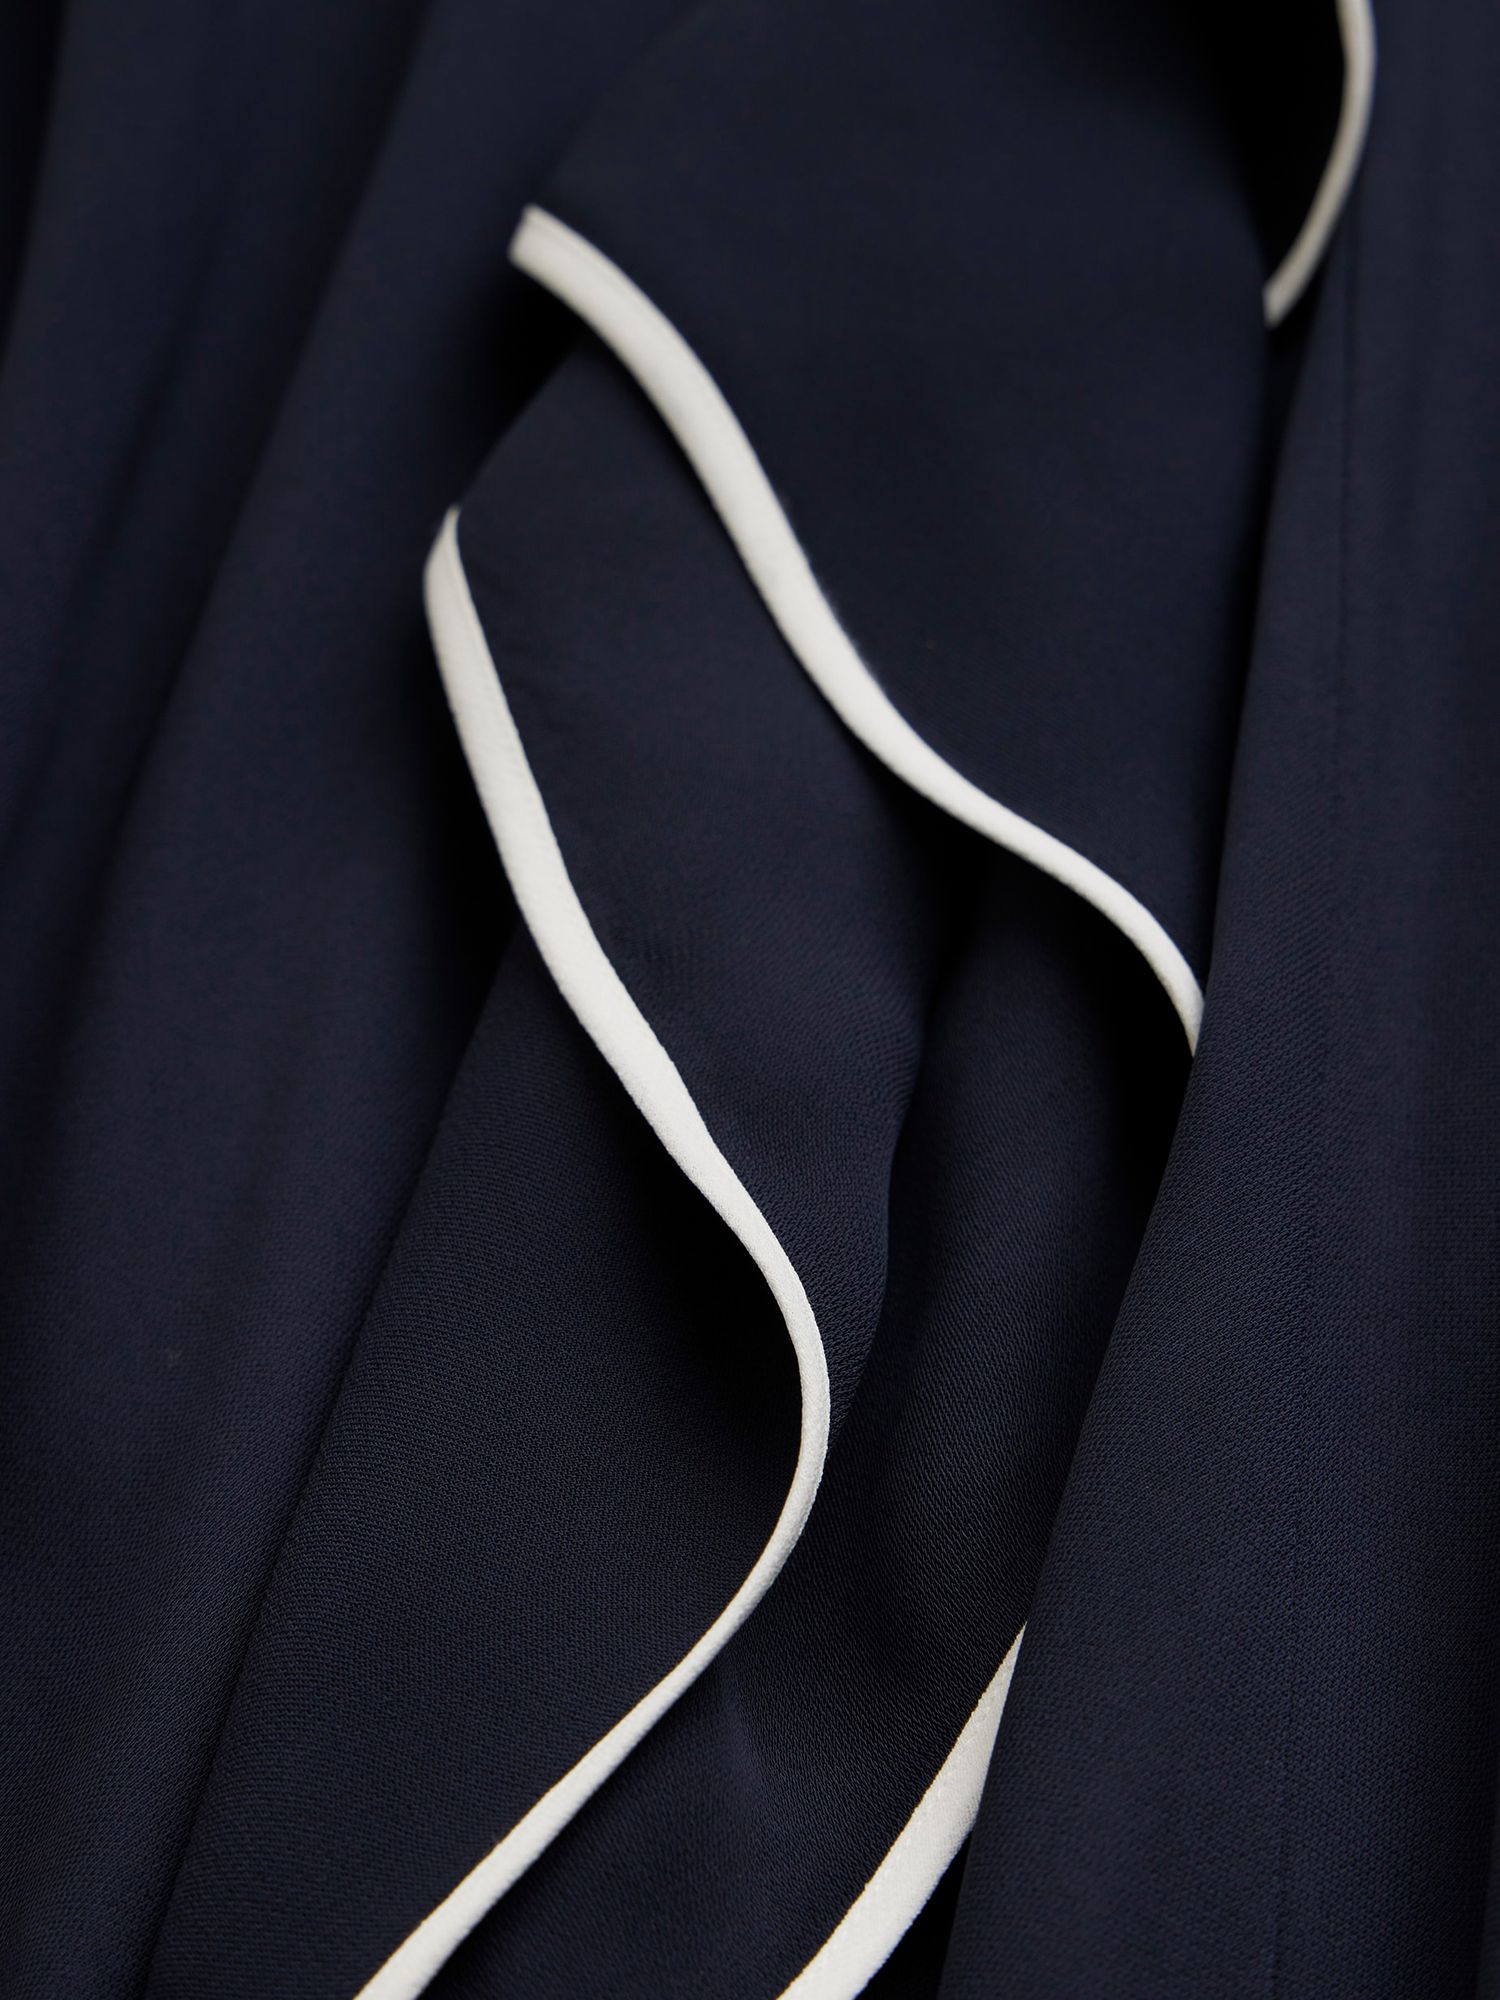 Mint Velvet Contrast Ruffle Midi Dress, Navy, 6